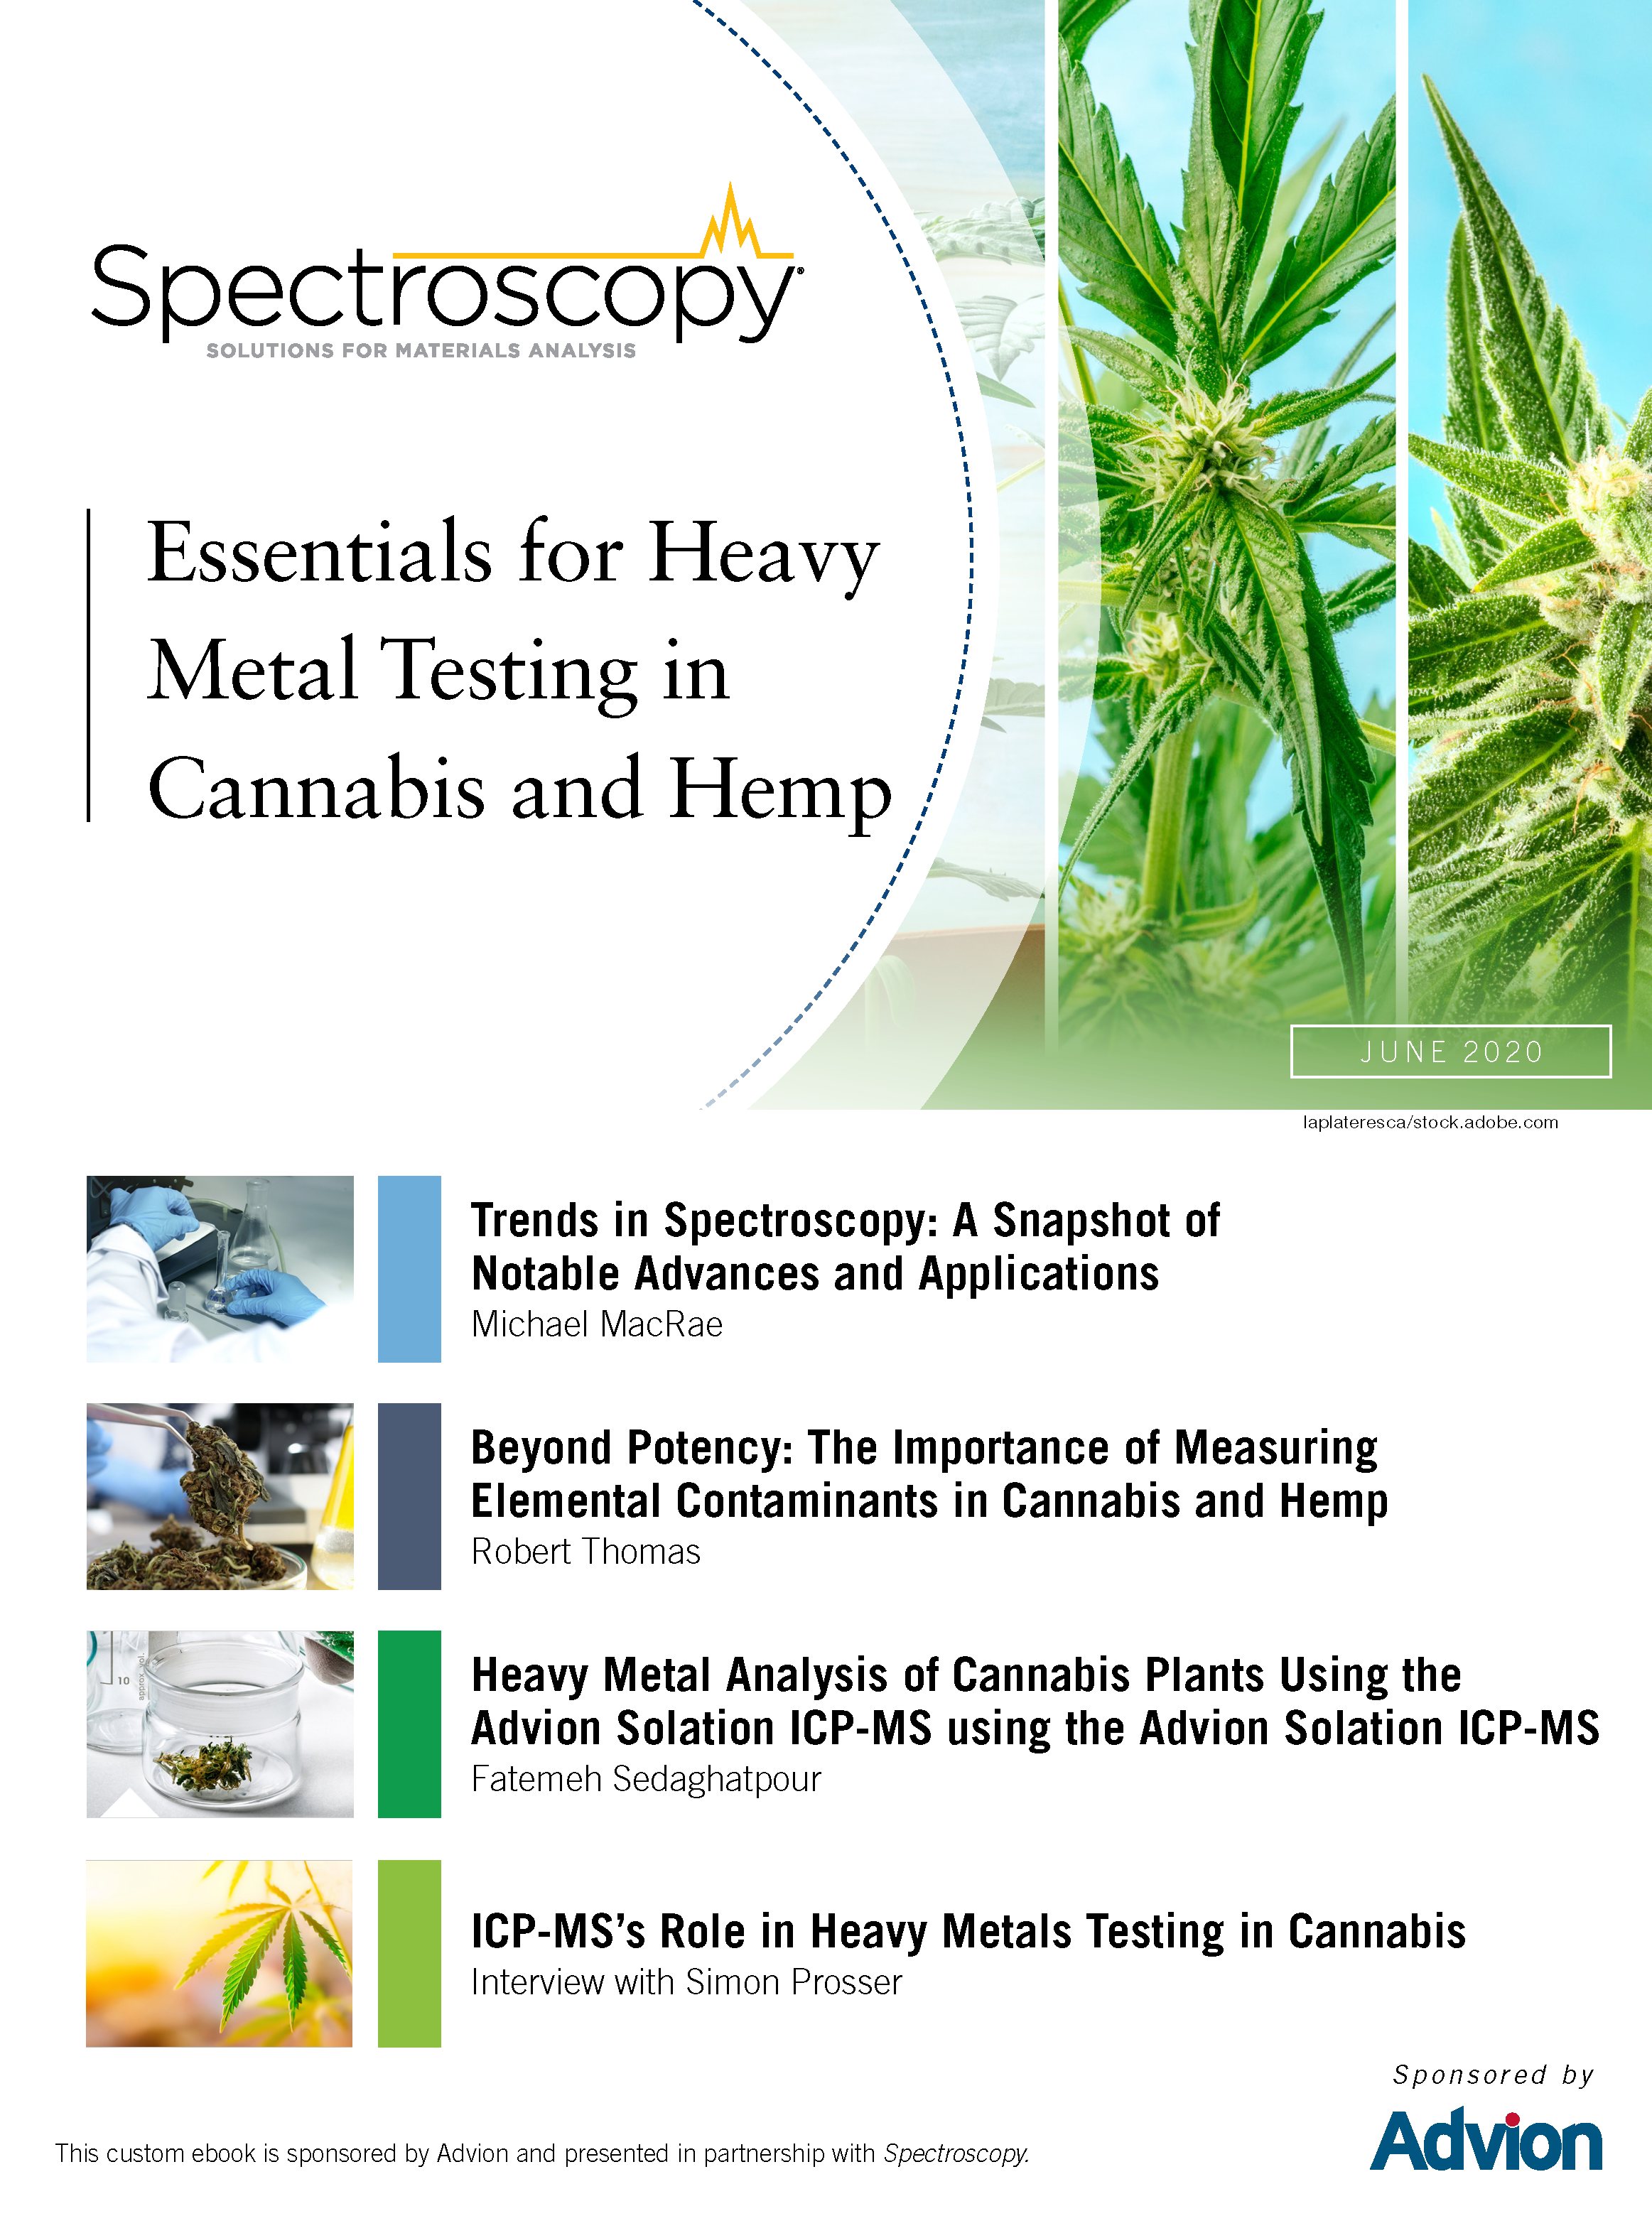 Essentiels pour les tests de métaux lourds dans le cannabis et le chanvre